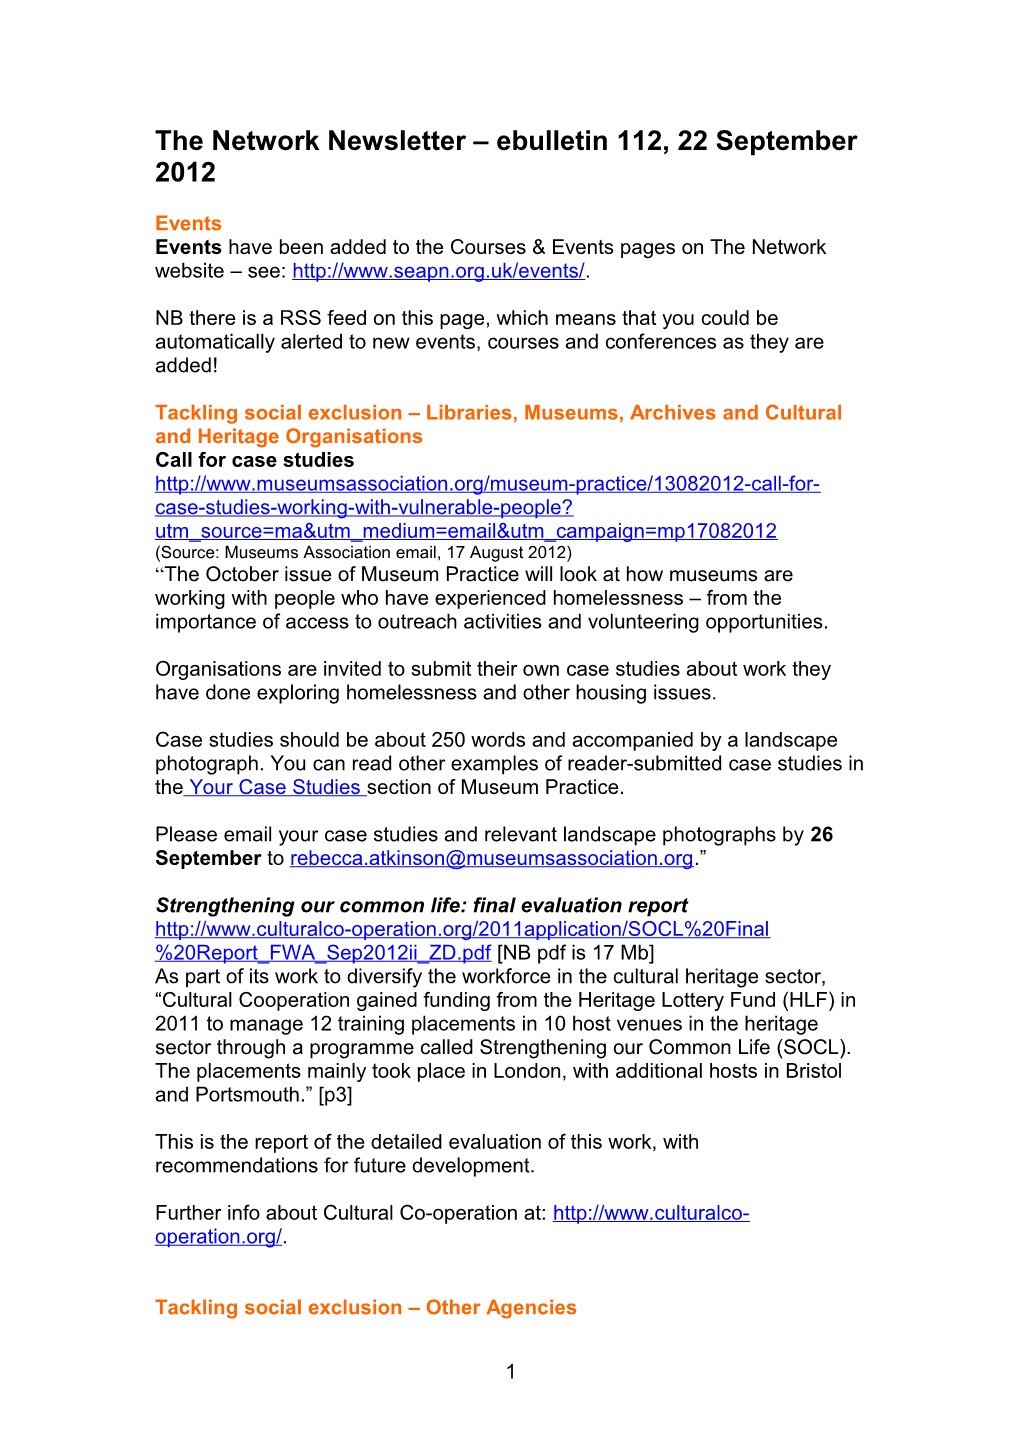 The Network Newsletter Ebulletin 1, 14 April 2008 s1